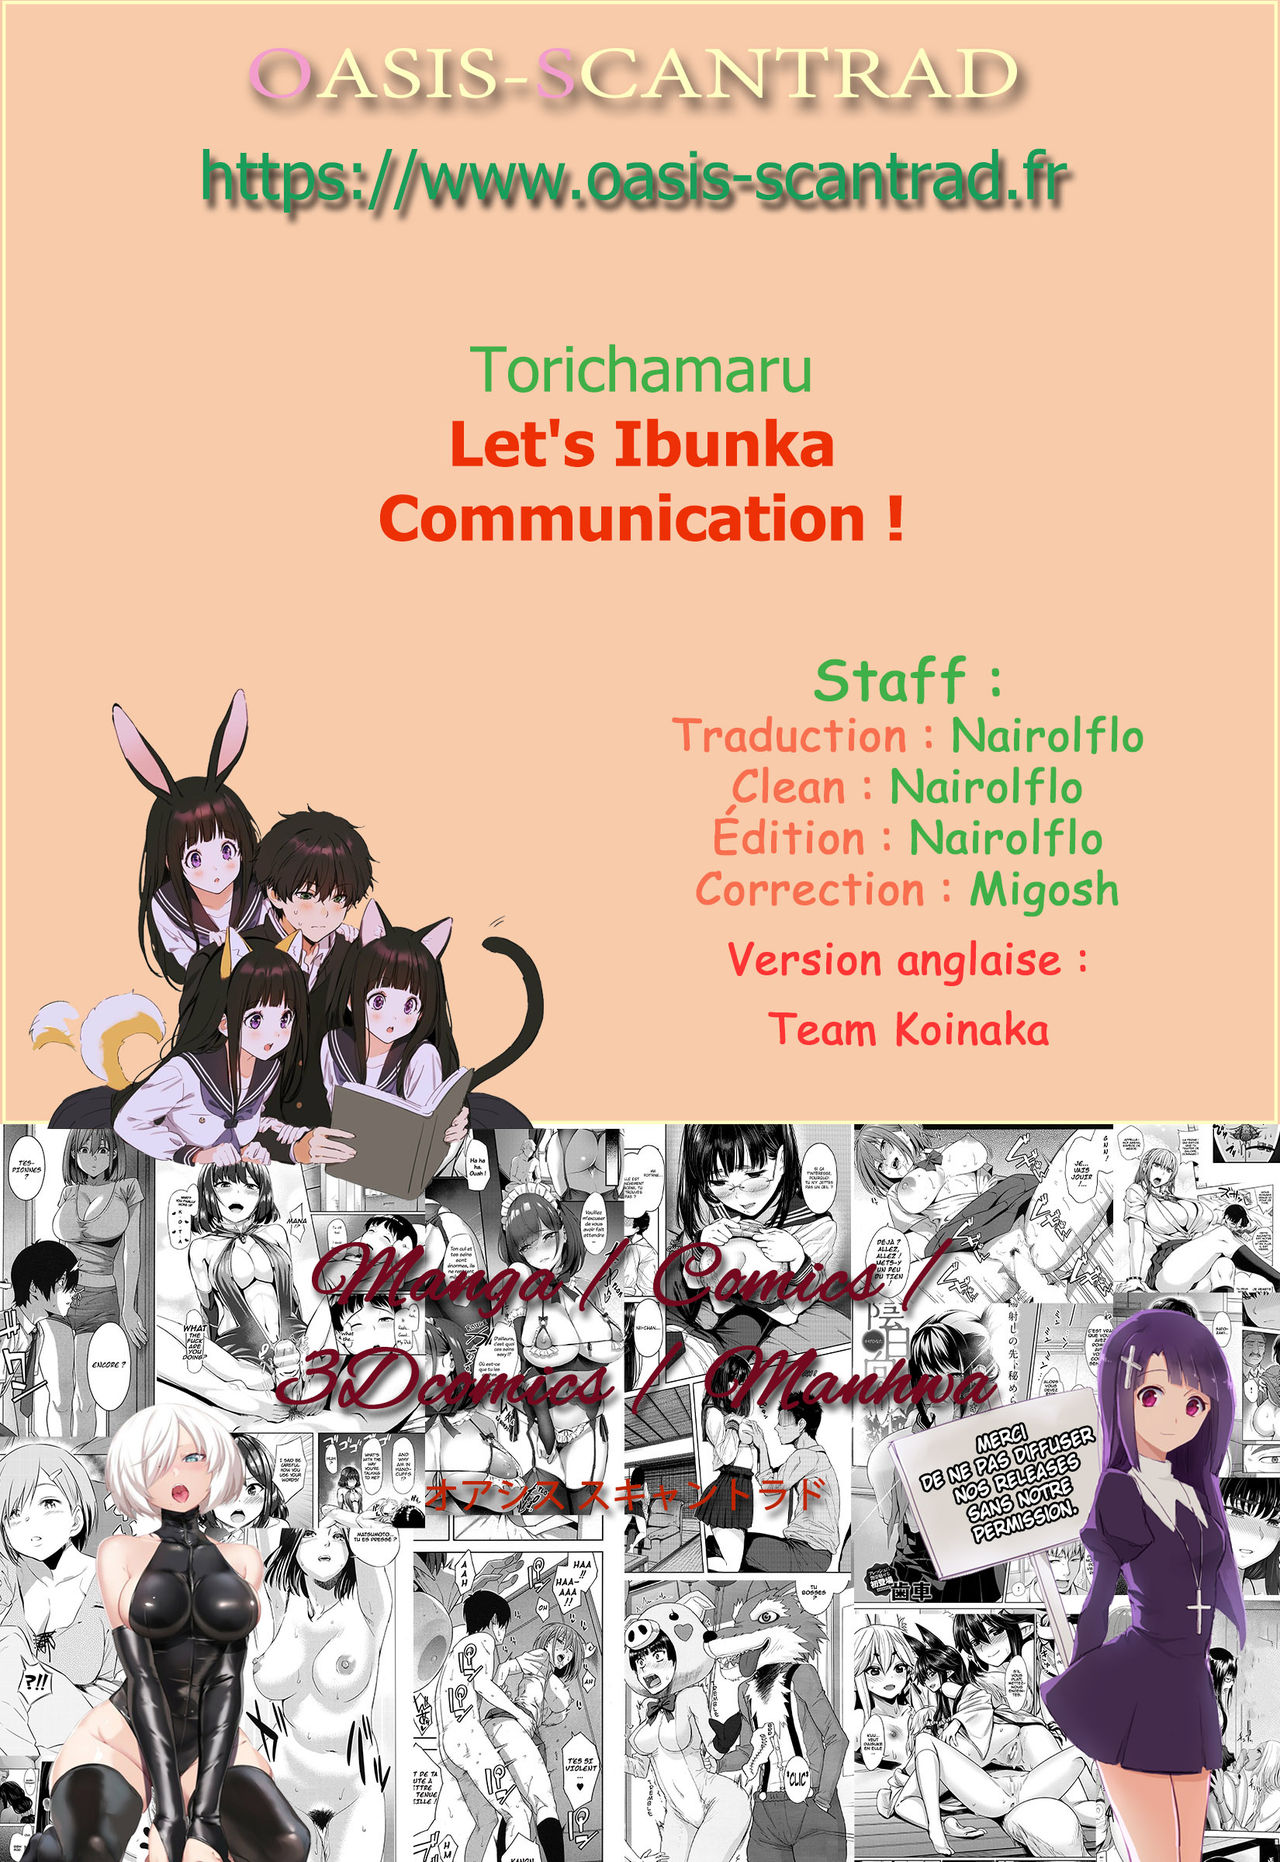 Lets Ibunka Communication!  Lets Intercultural Communication! numero d'image 22